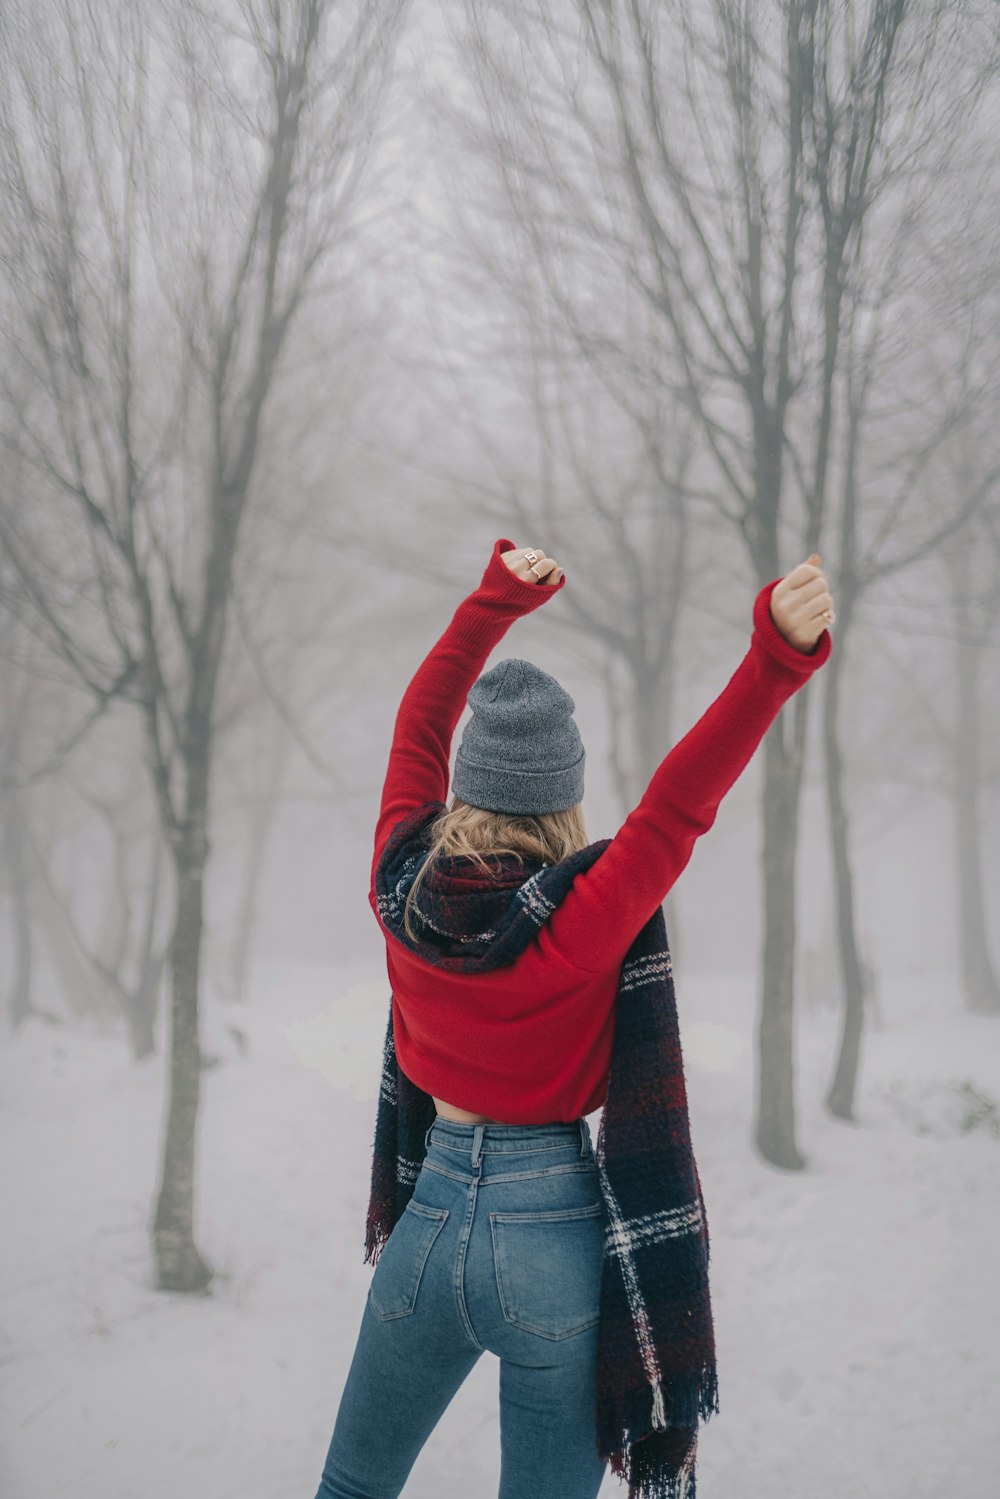 donna che alza le due mani rivolte verso gli alberi spogli coperti di neve